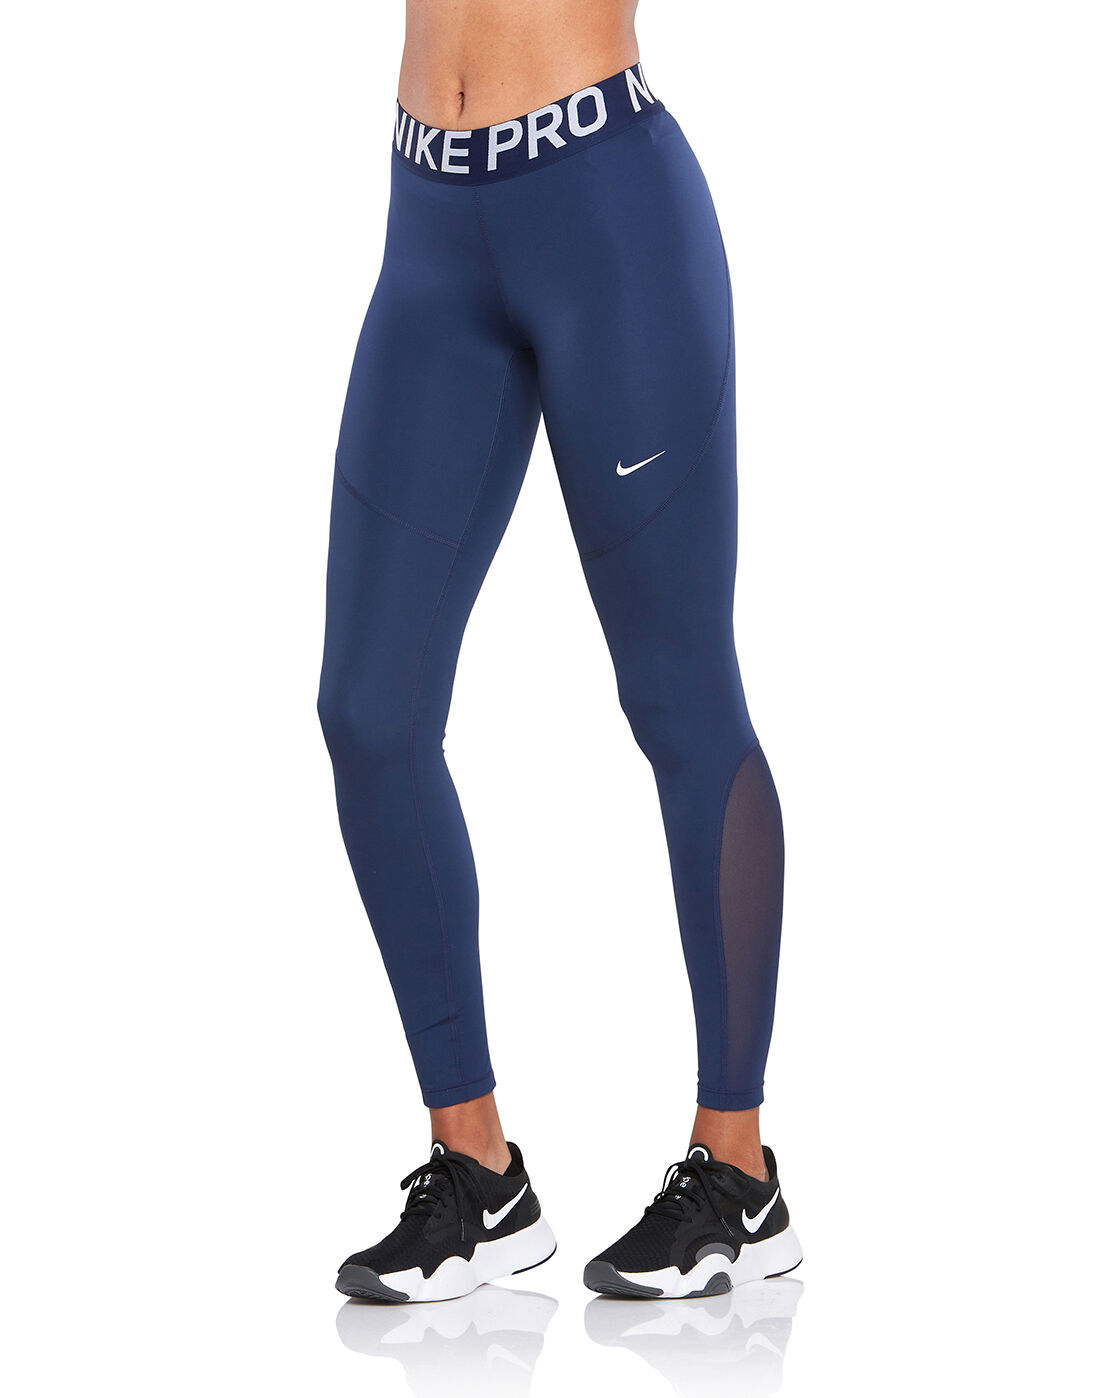 Nike Womens Pro 365 Leggings - Navy 